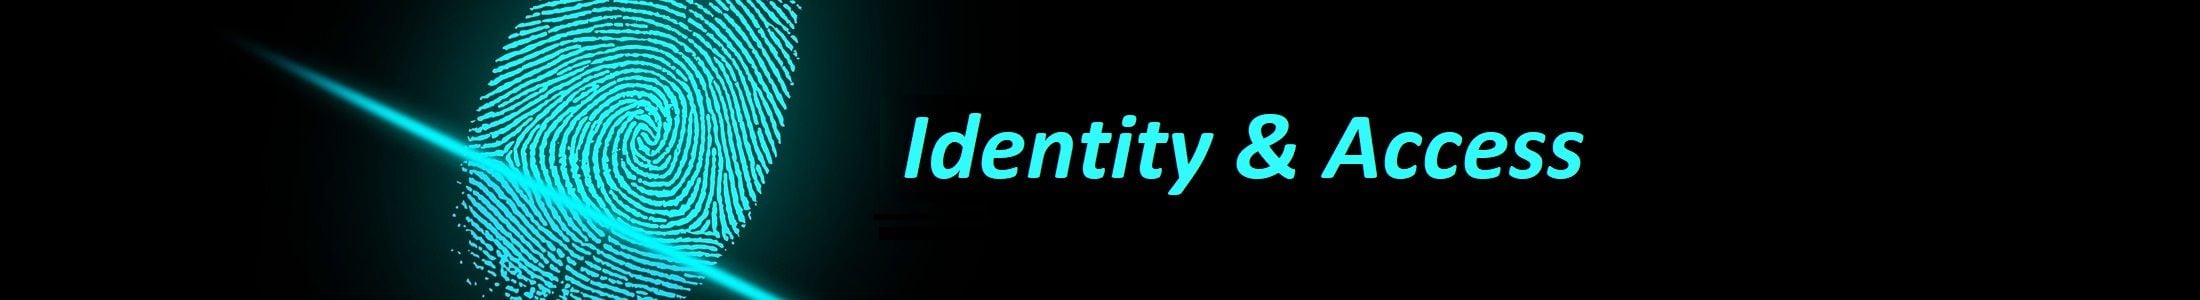 gestion identidad acceso